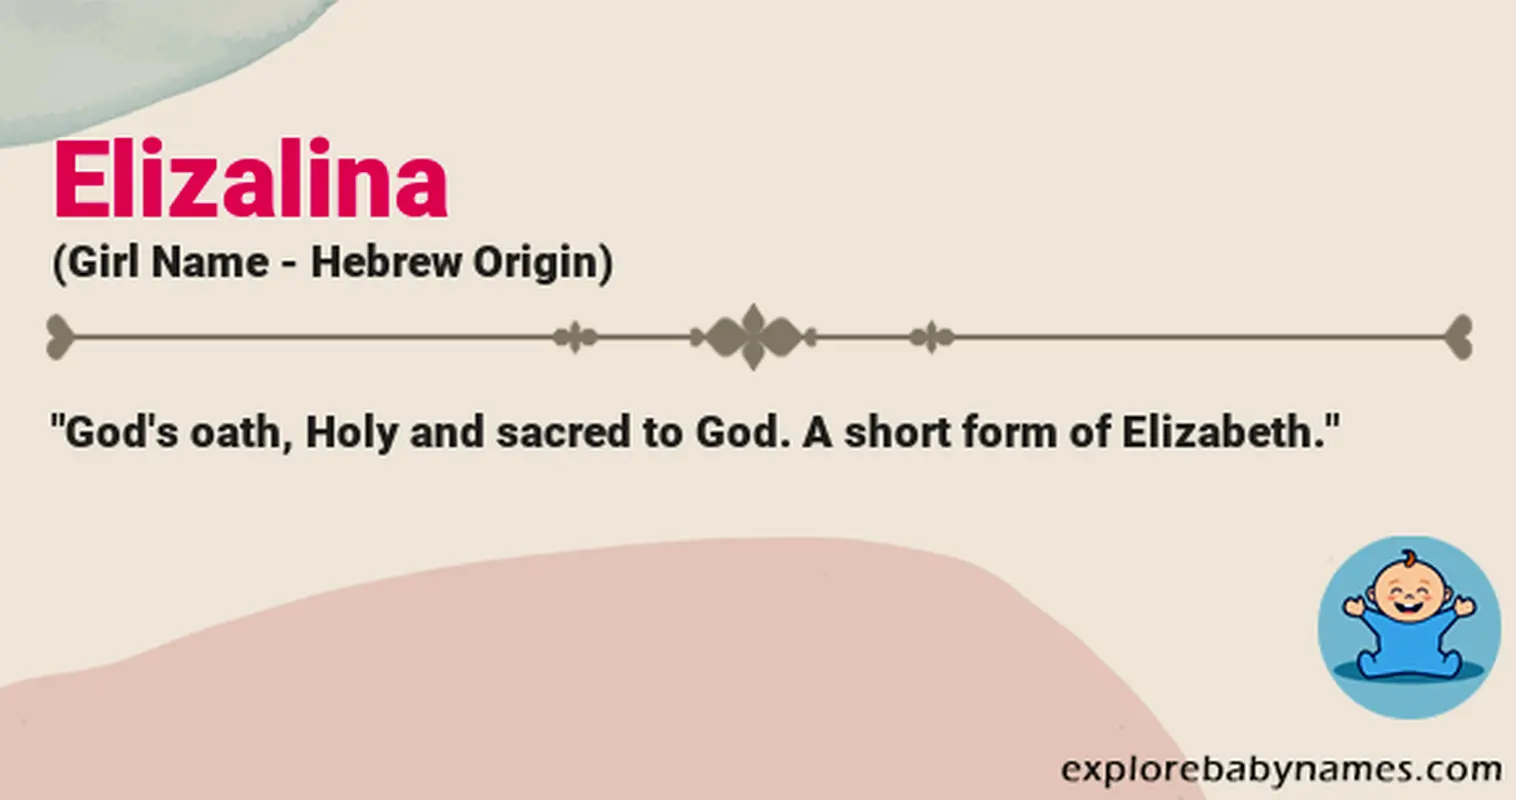 Meaning of Elizalina